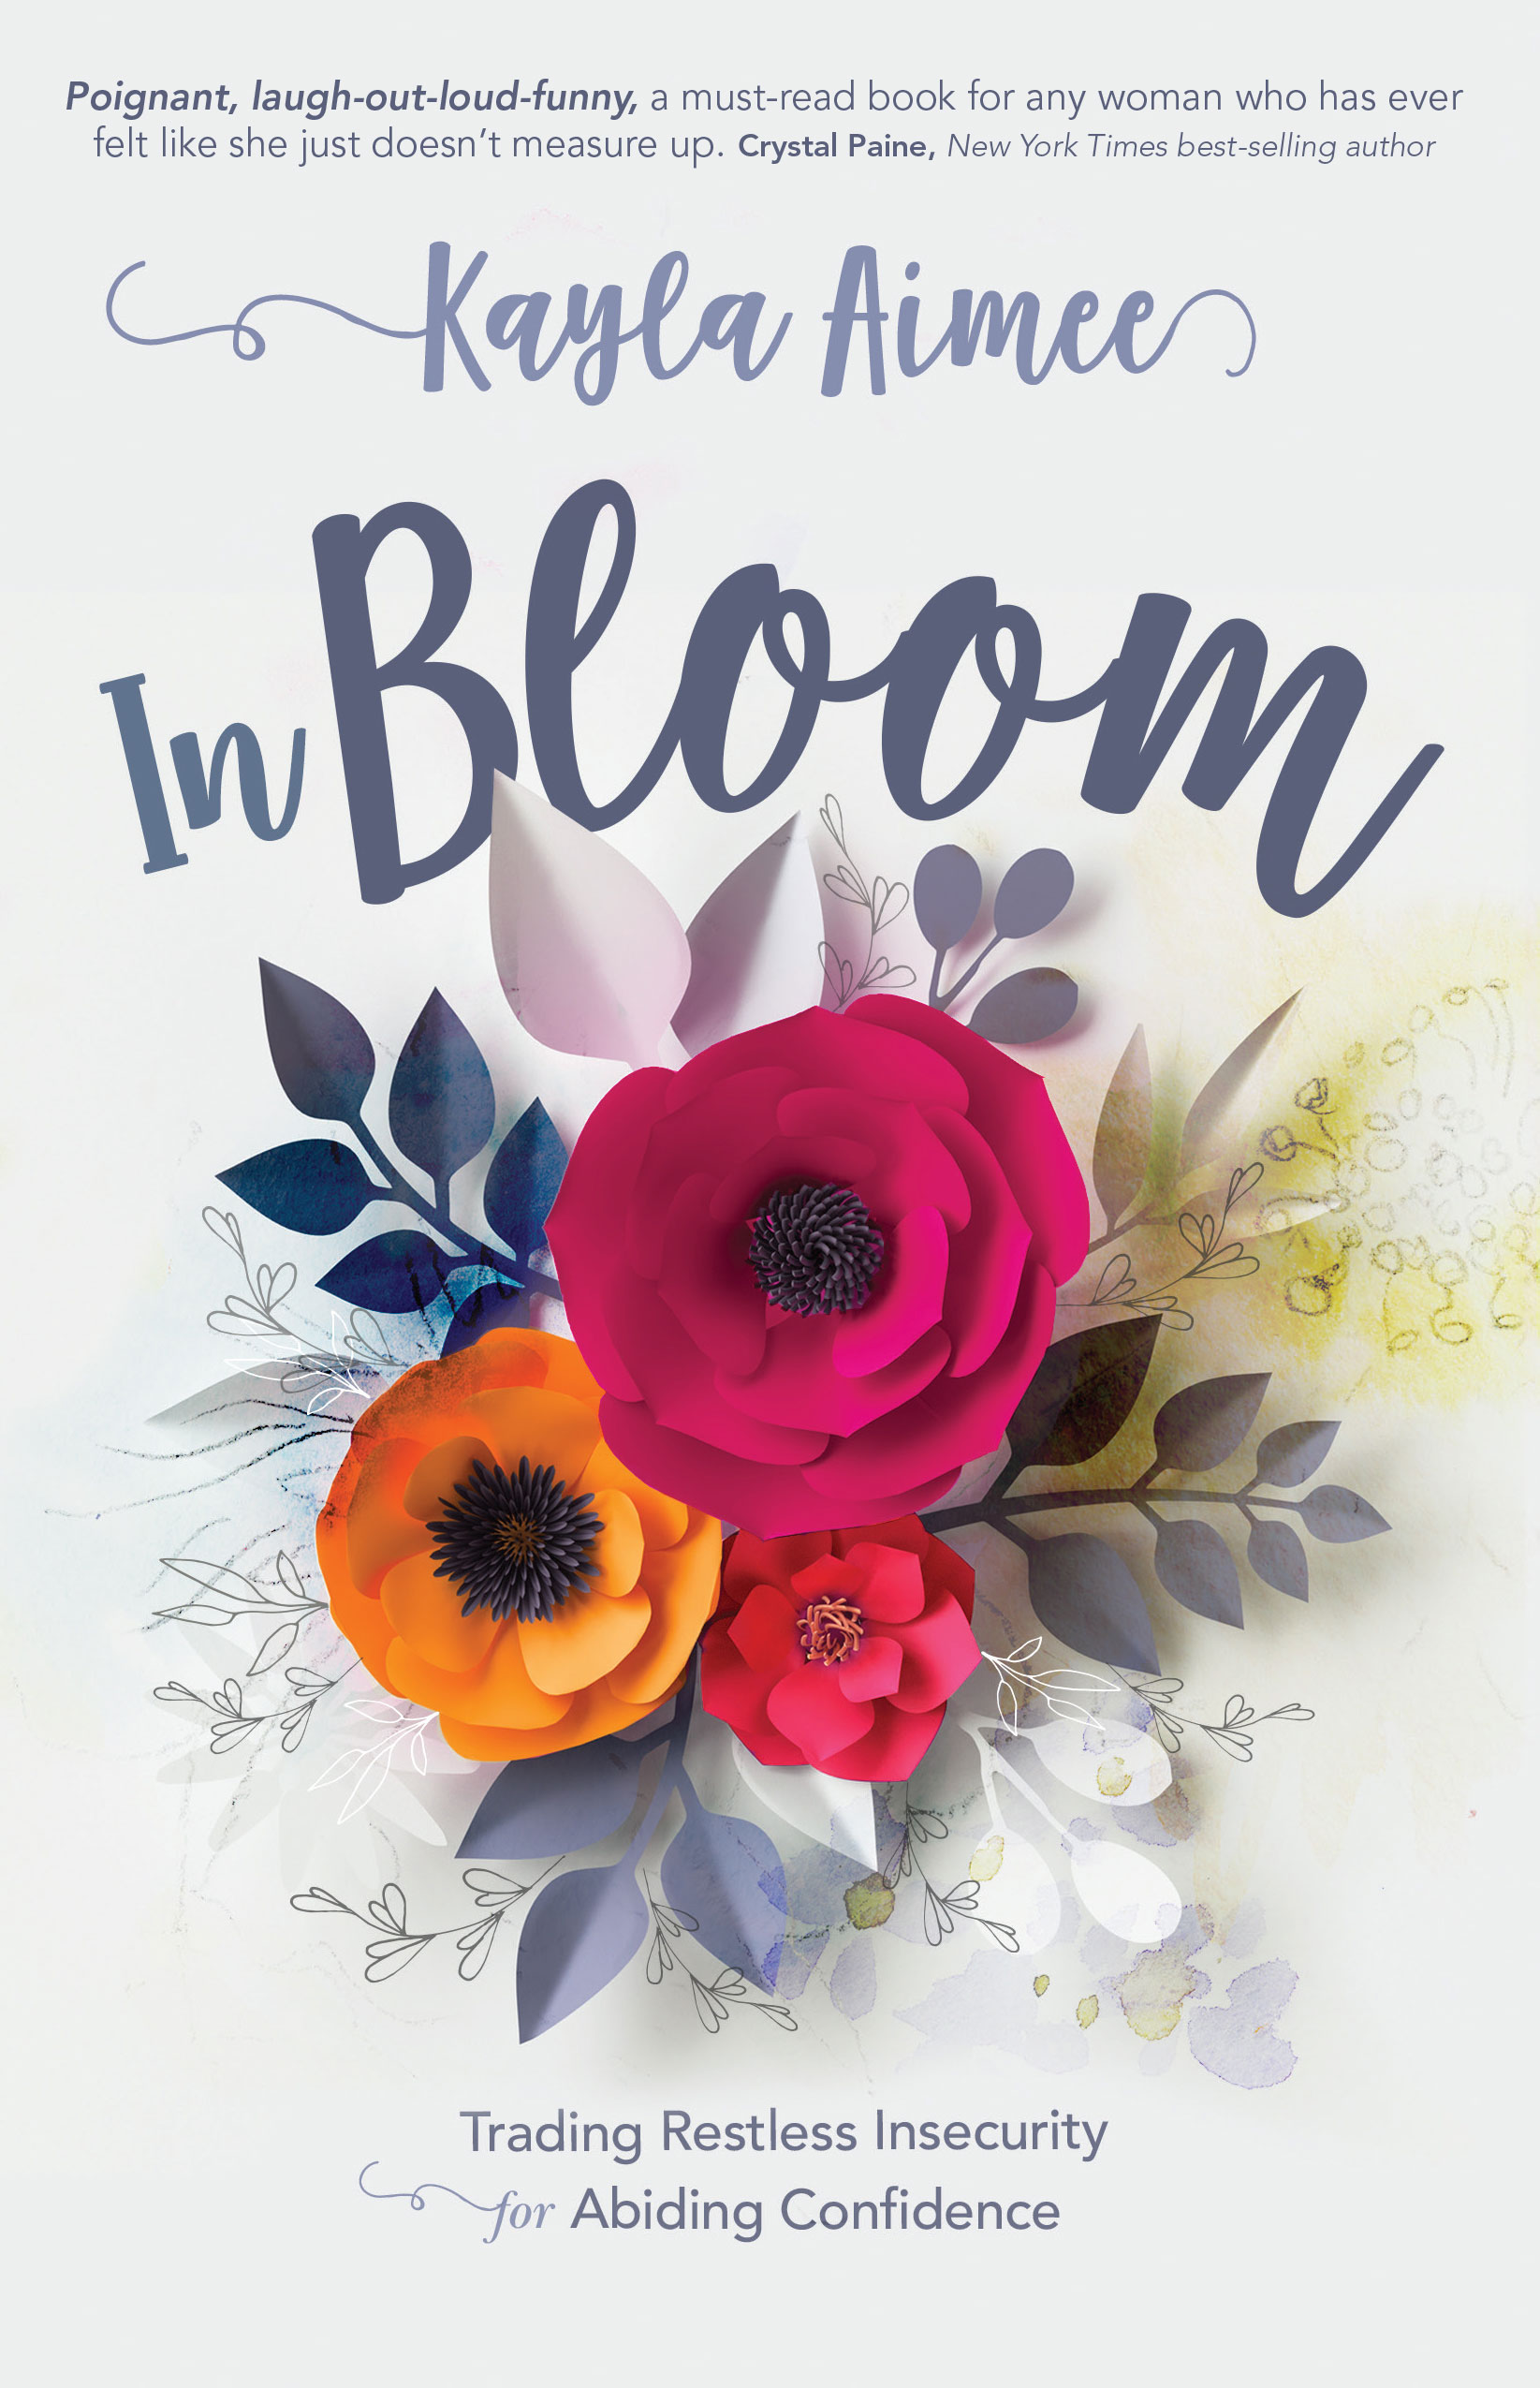 In Bloom by Kayla Aimee